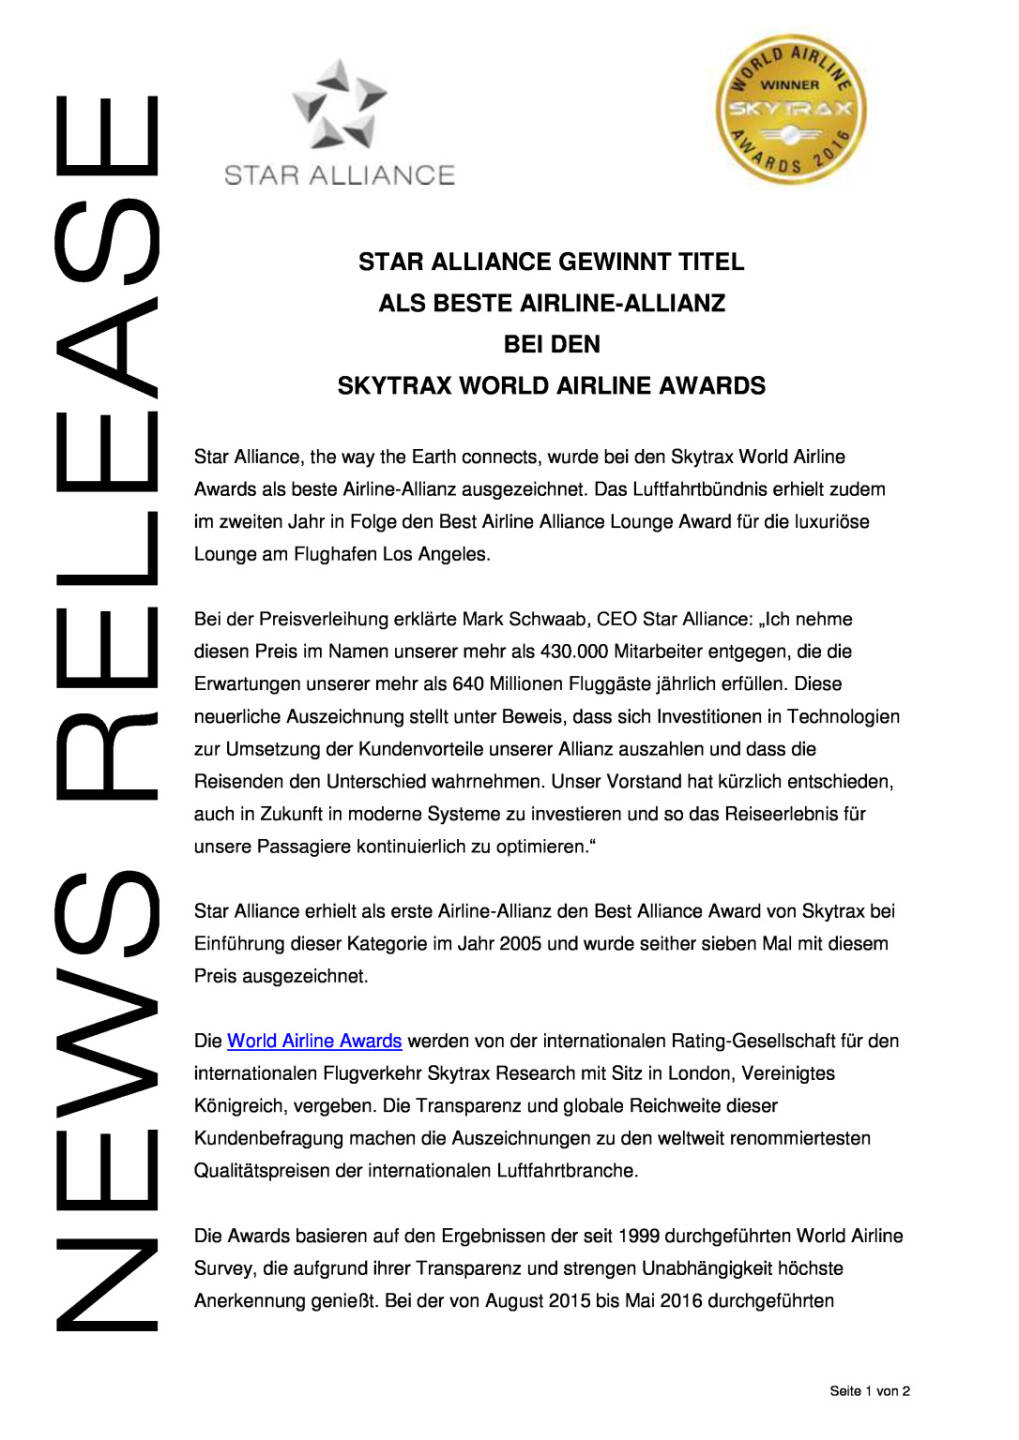 Star Alliance: Auszeichnung als als beste Airline-Allianz bei den Skytrax World Airline Awards , Seite 1/2, komplettes Dokument unter http://boerse-social.com/static/uploads/file_1422_star_alliance_auszeichnung_als_als_beste_airline-allianz_bei_den_skytrax_world_airline_awards.pdf